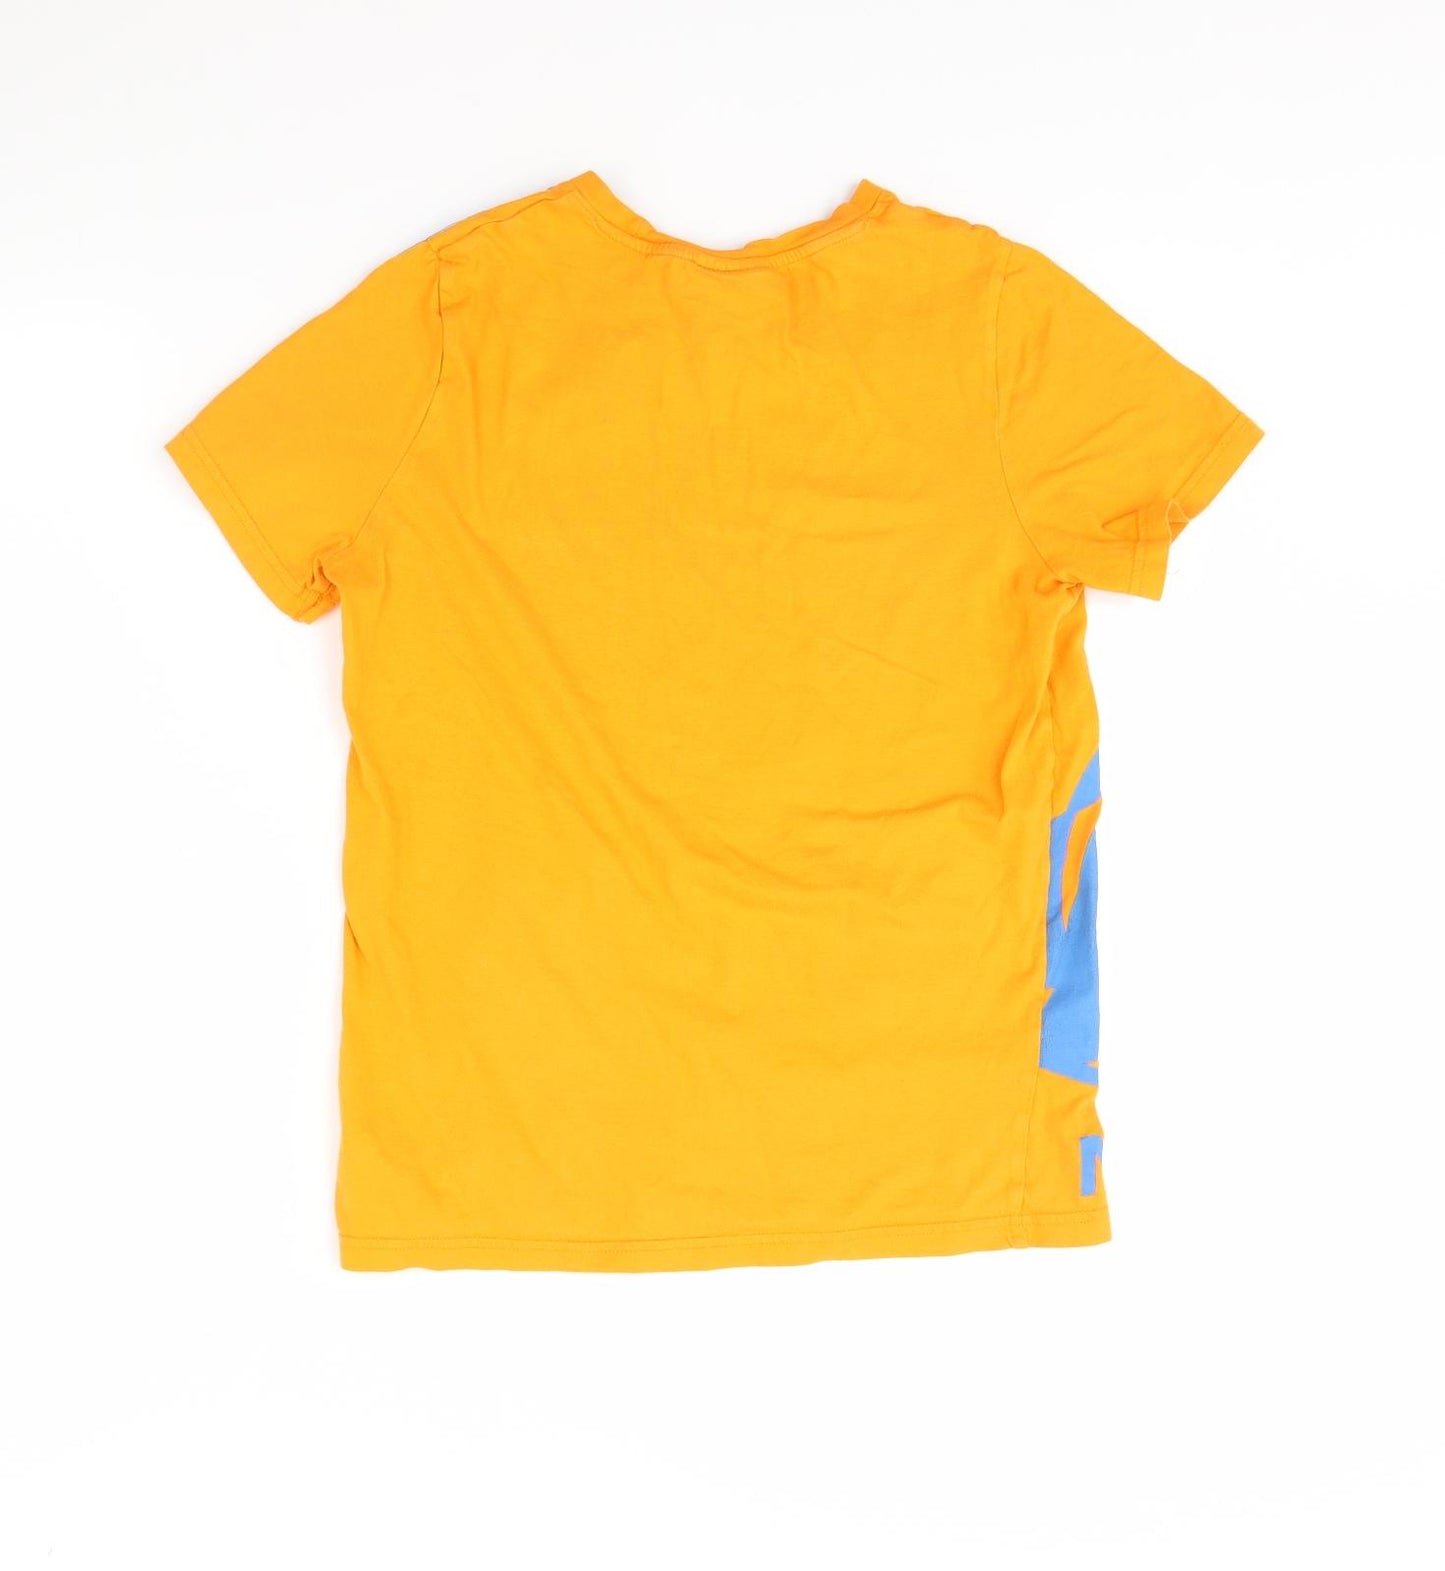 NERF Boys Orange   Basic T-Shirt Size 11 Years